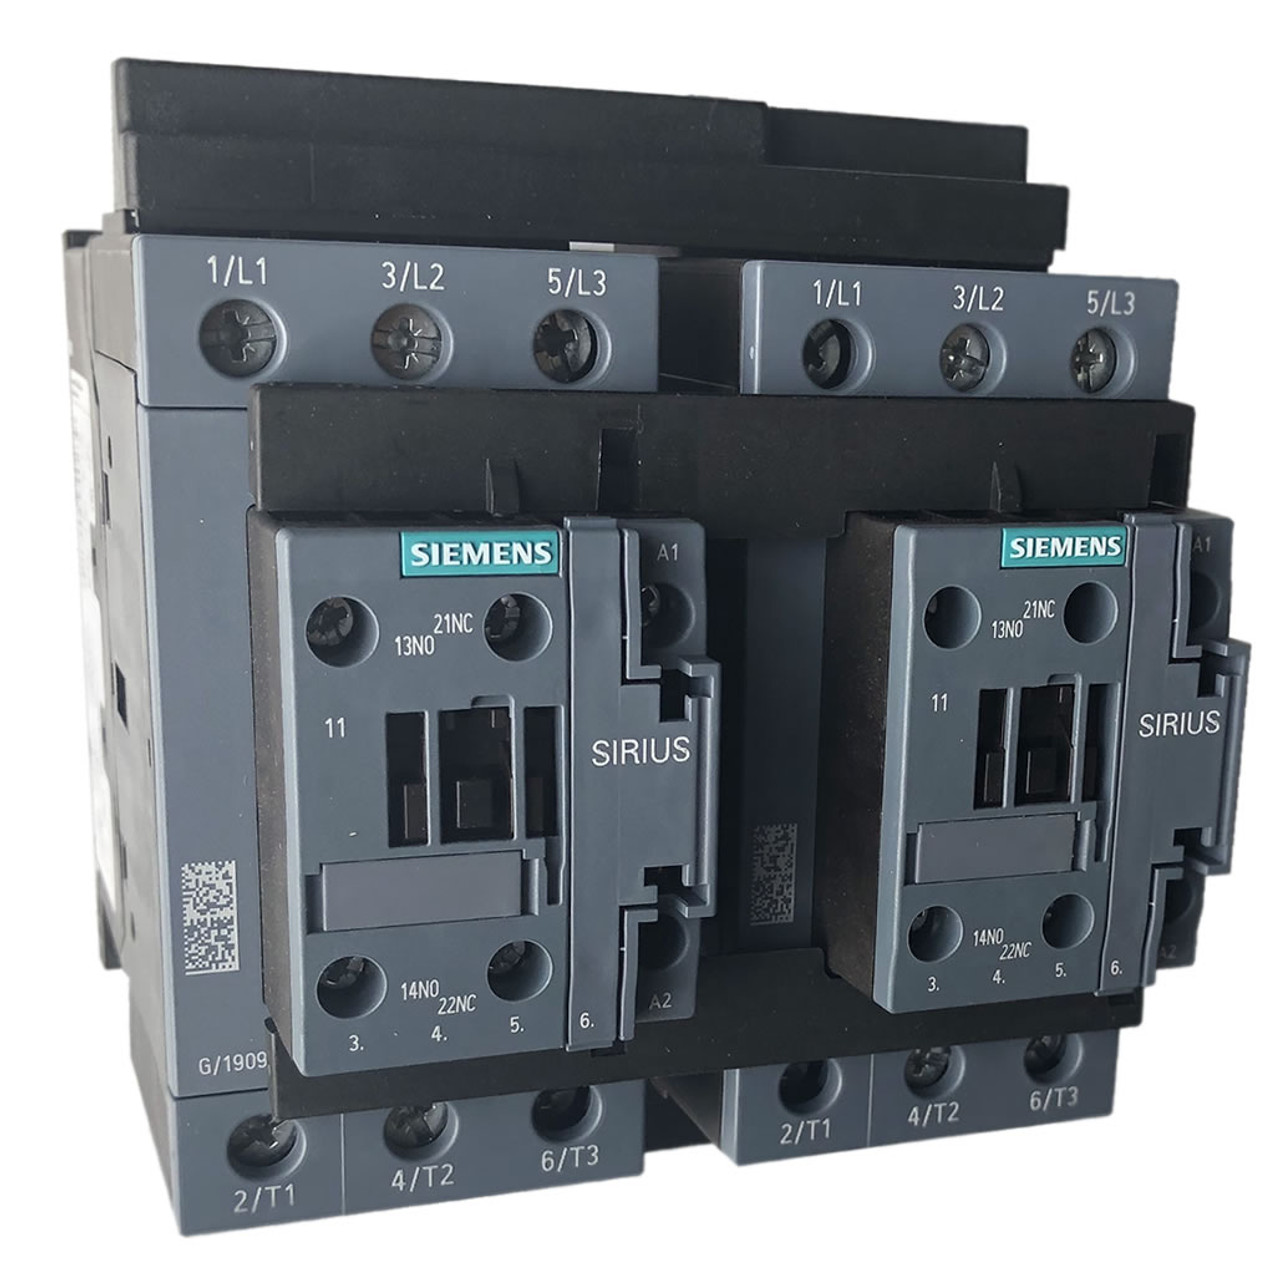 Siemens 3RA2335-8XB30-1AN2 reversing contactor